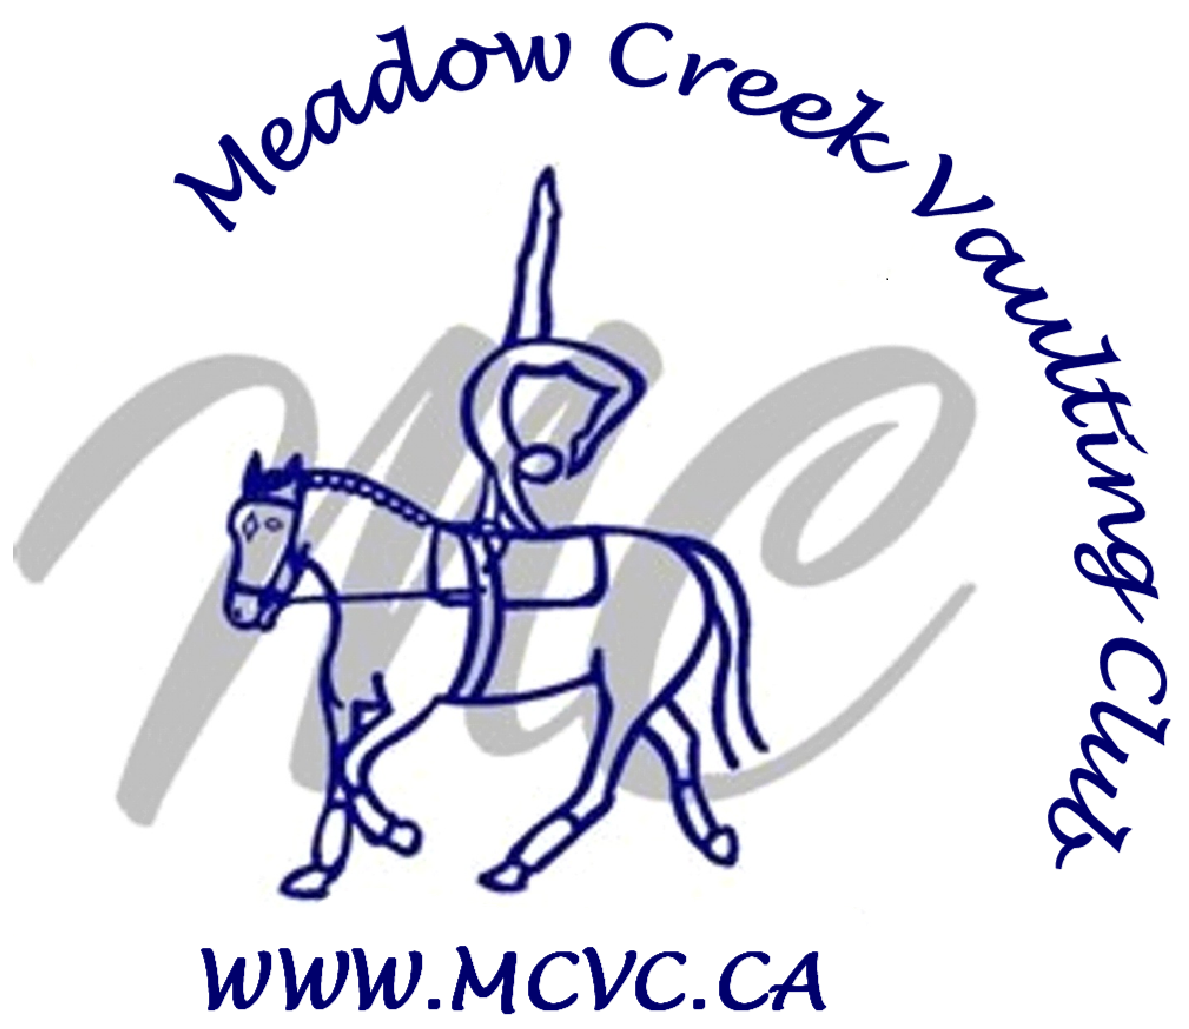 Meadow Creek Vaulting Club